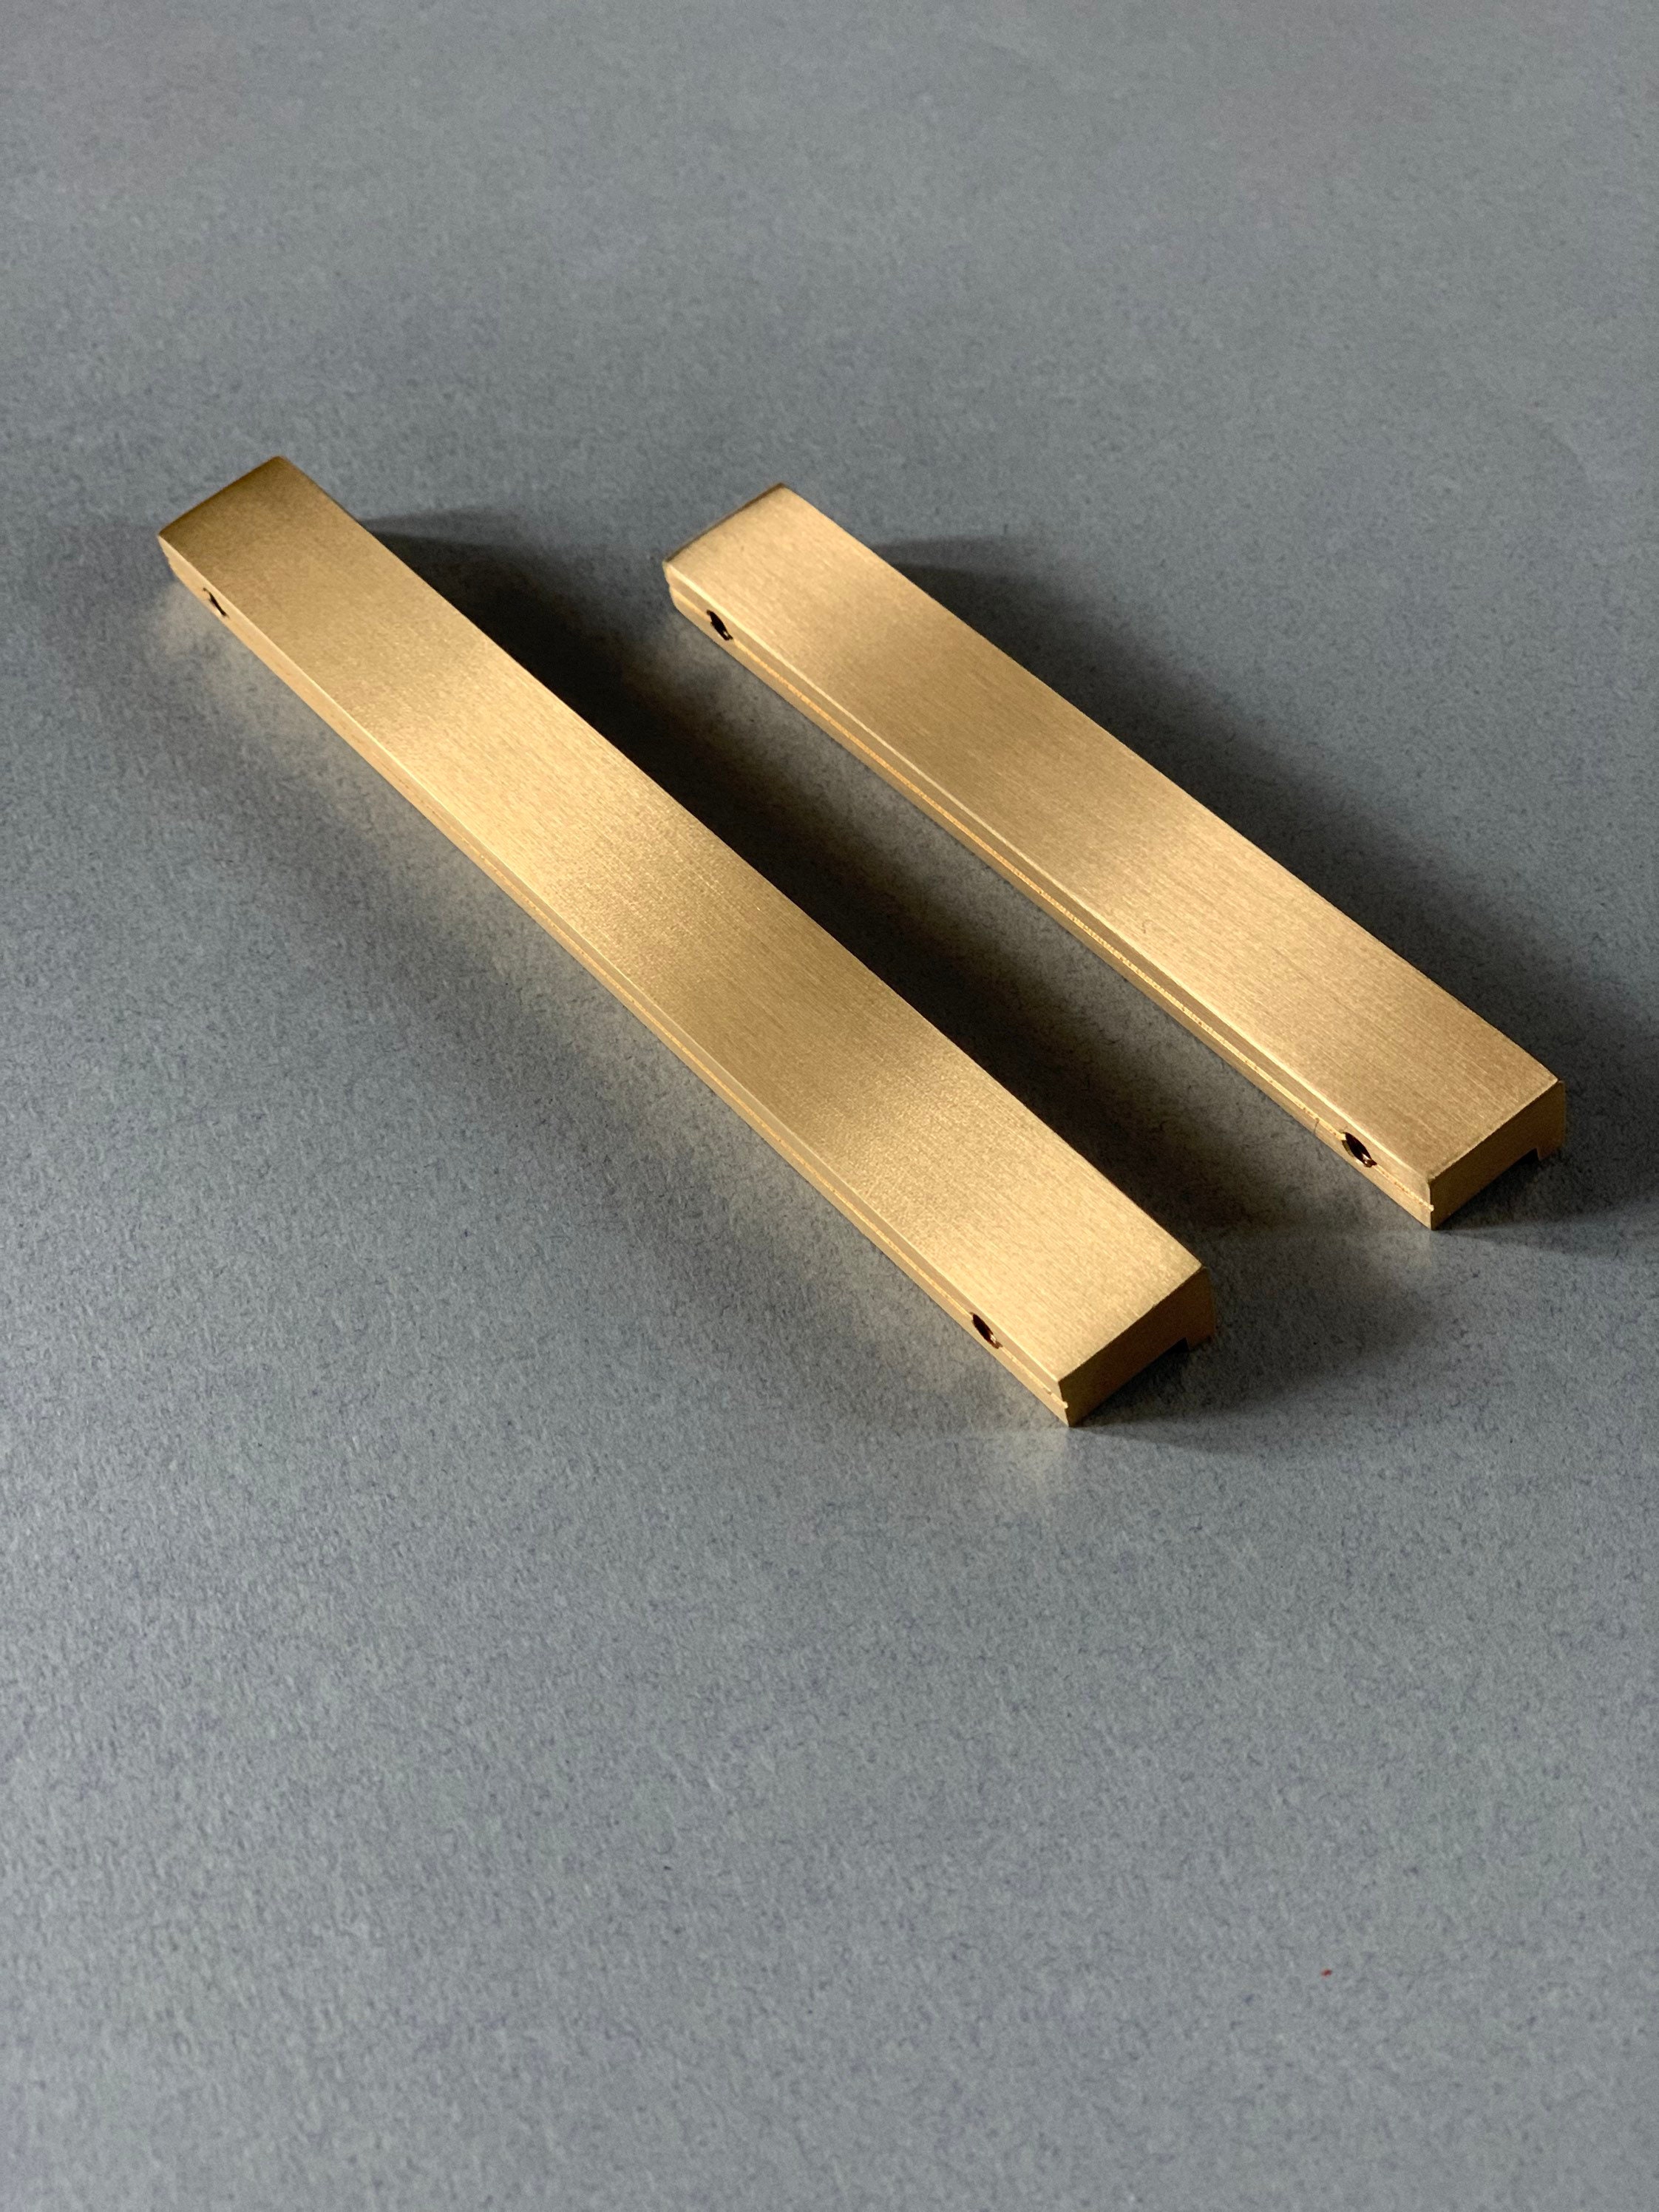 Solid Brass Cabinet Handles Slim Minimalist Brass Cupboard Handles Drawer  Pull Door Handles Gold Drawer Hardware Brass Bar Pulls -  Canada